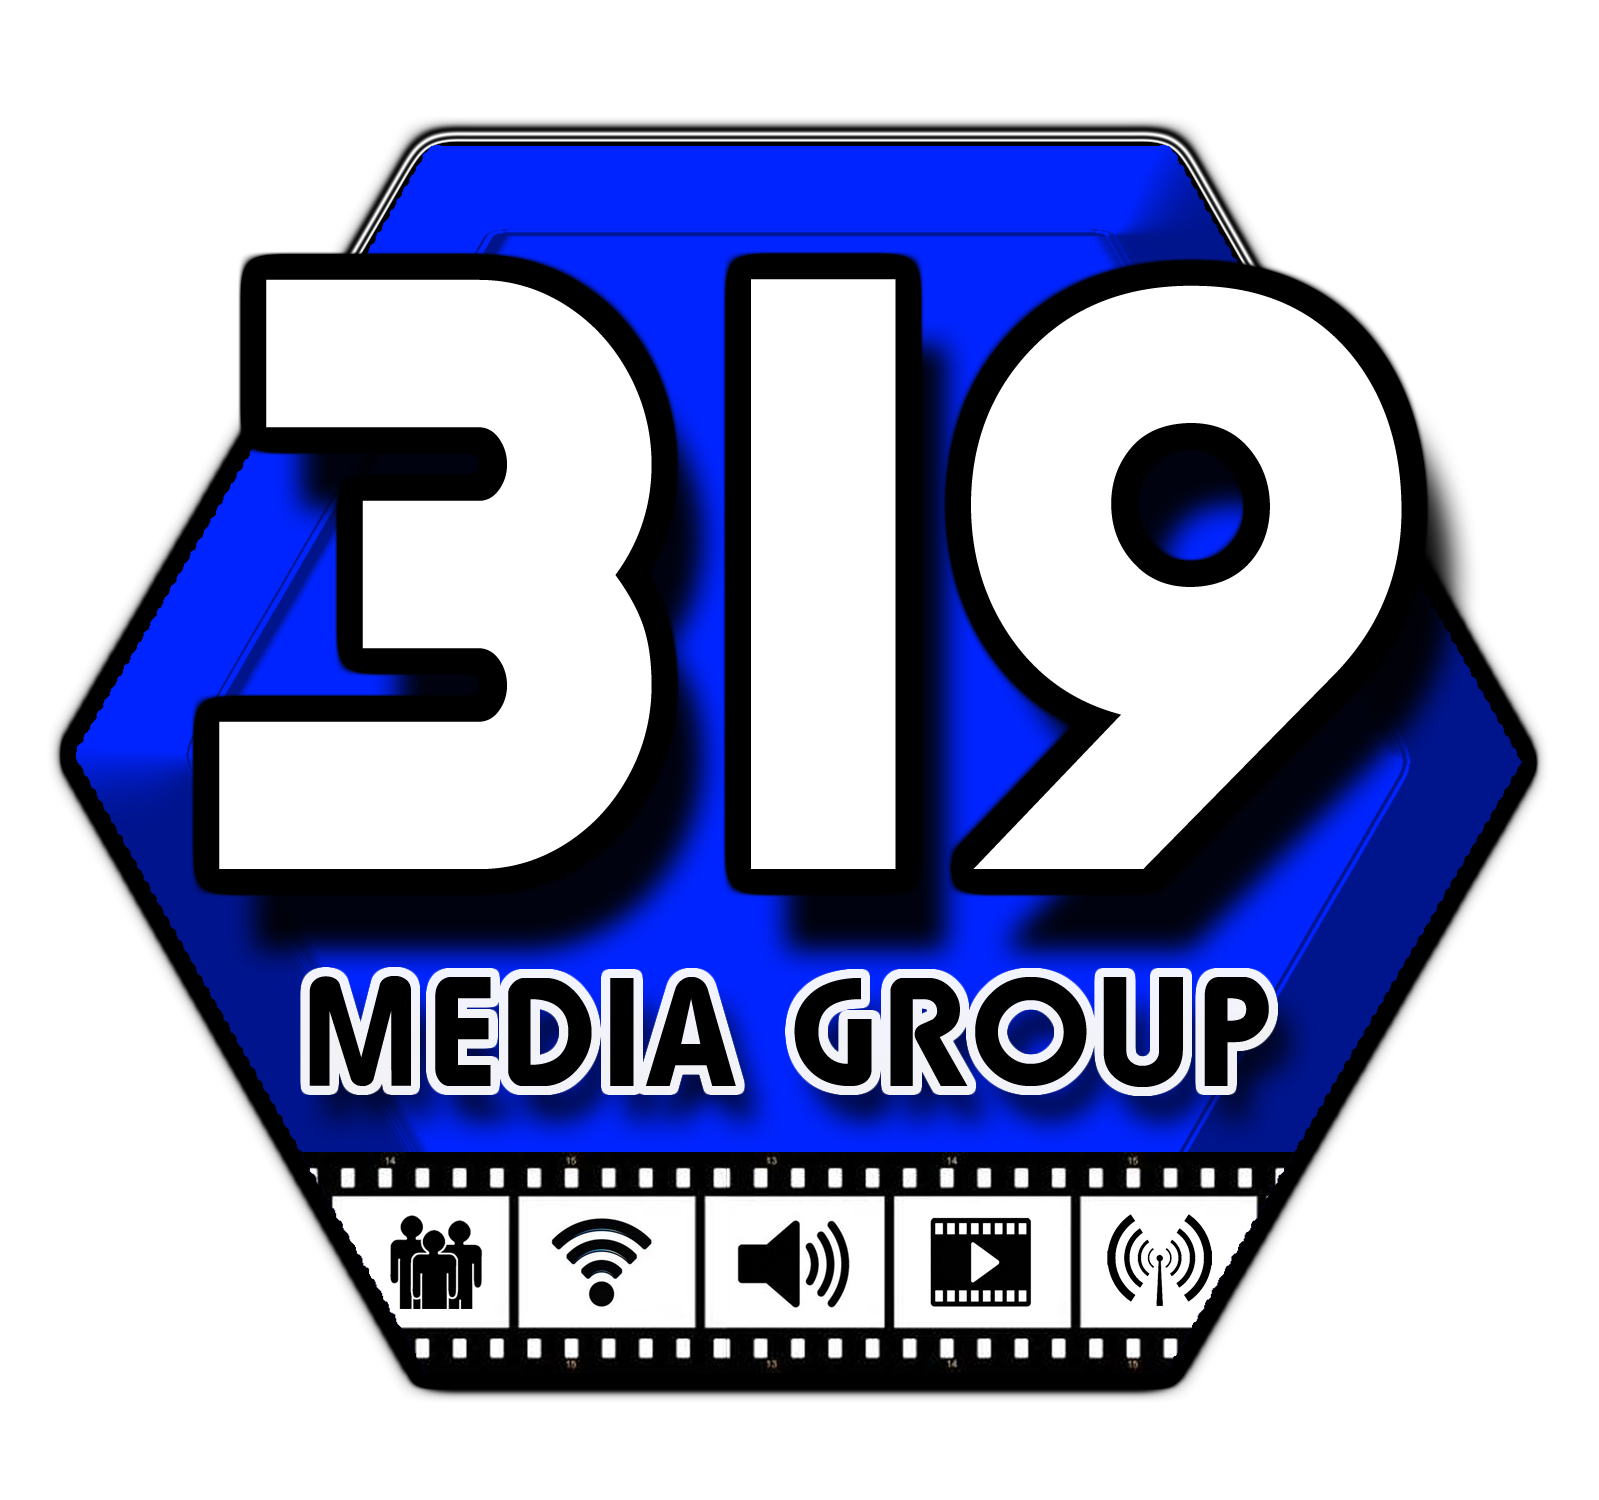 319 Media Group Logo